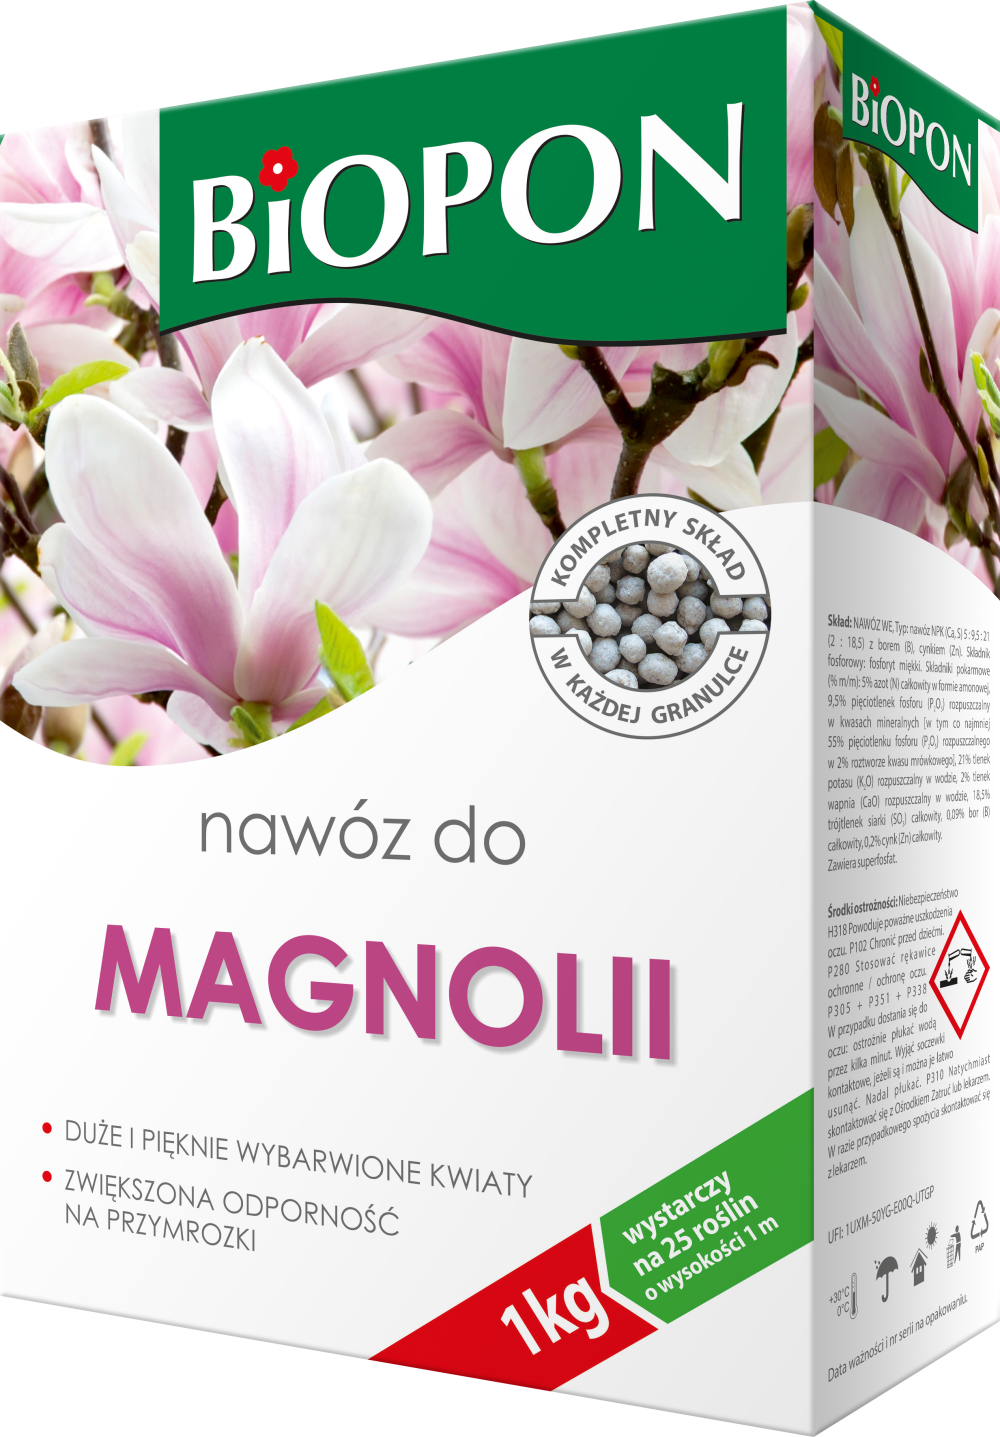 agra nowa ogrodniczy biopon nawóz do magnolii